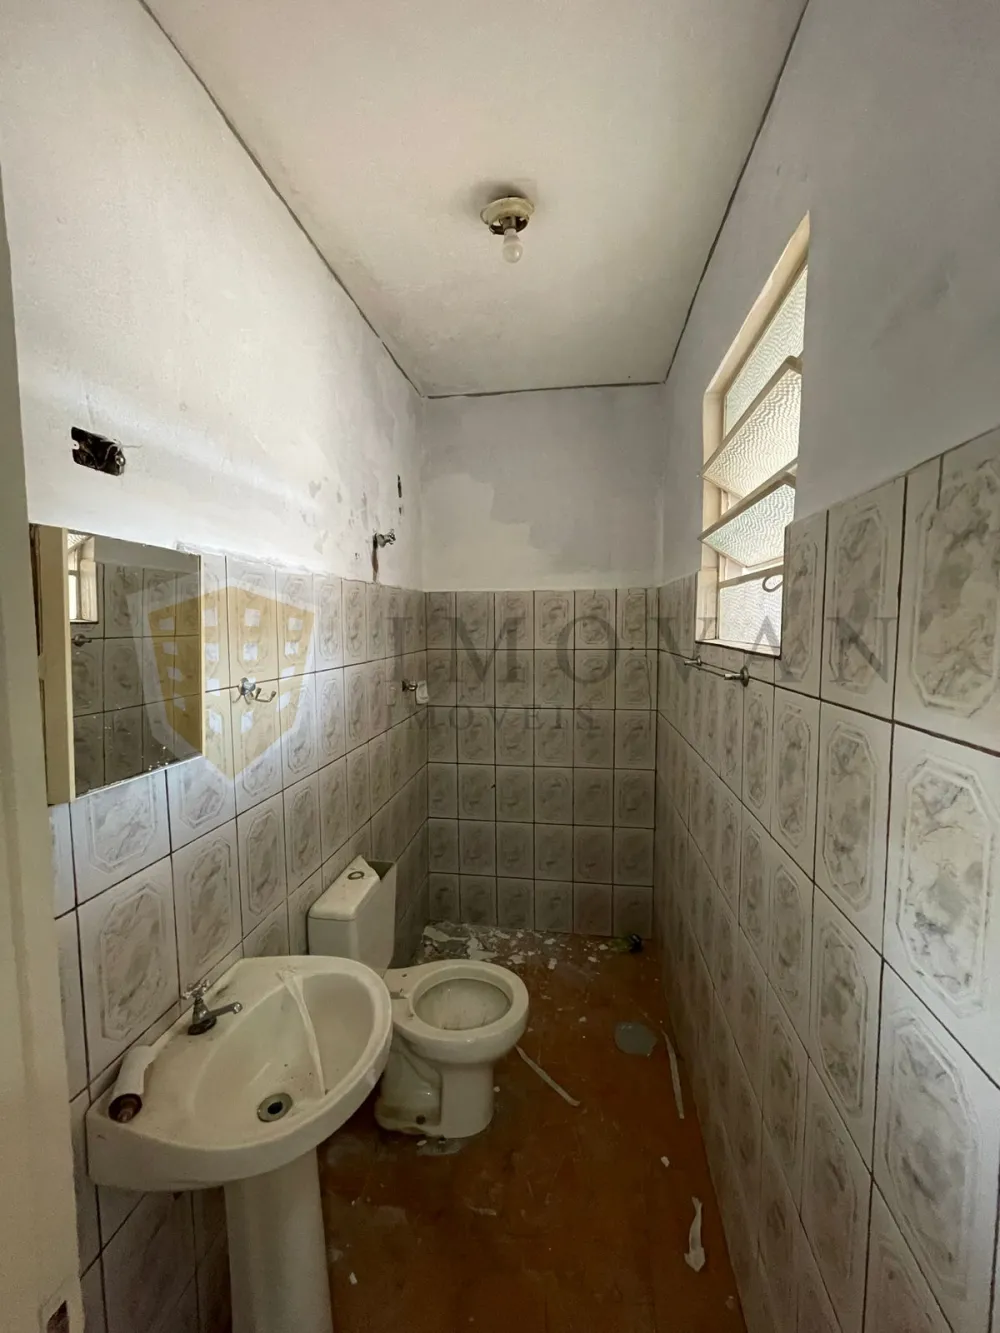 Comprar Casa / Padrão em Ribeirão Preto R$ 280.000,00 - Foto 9